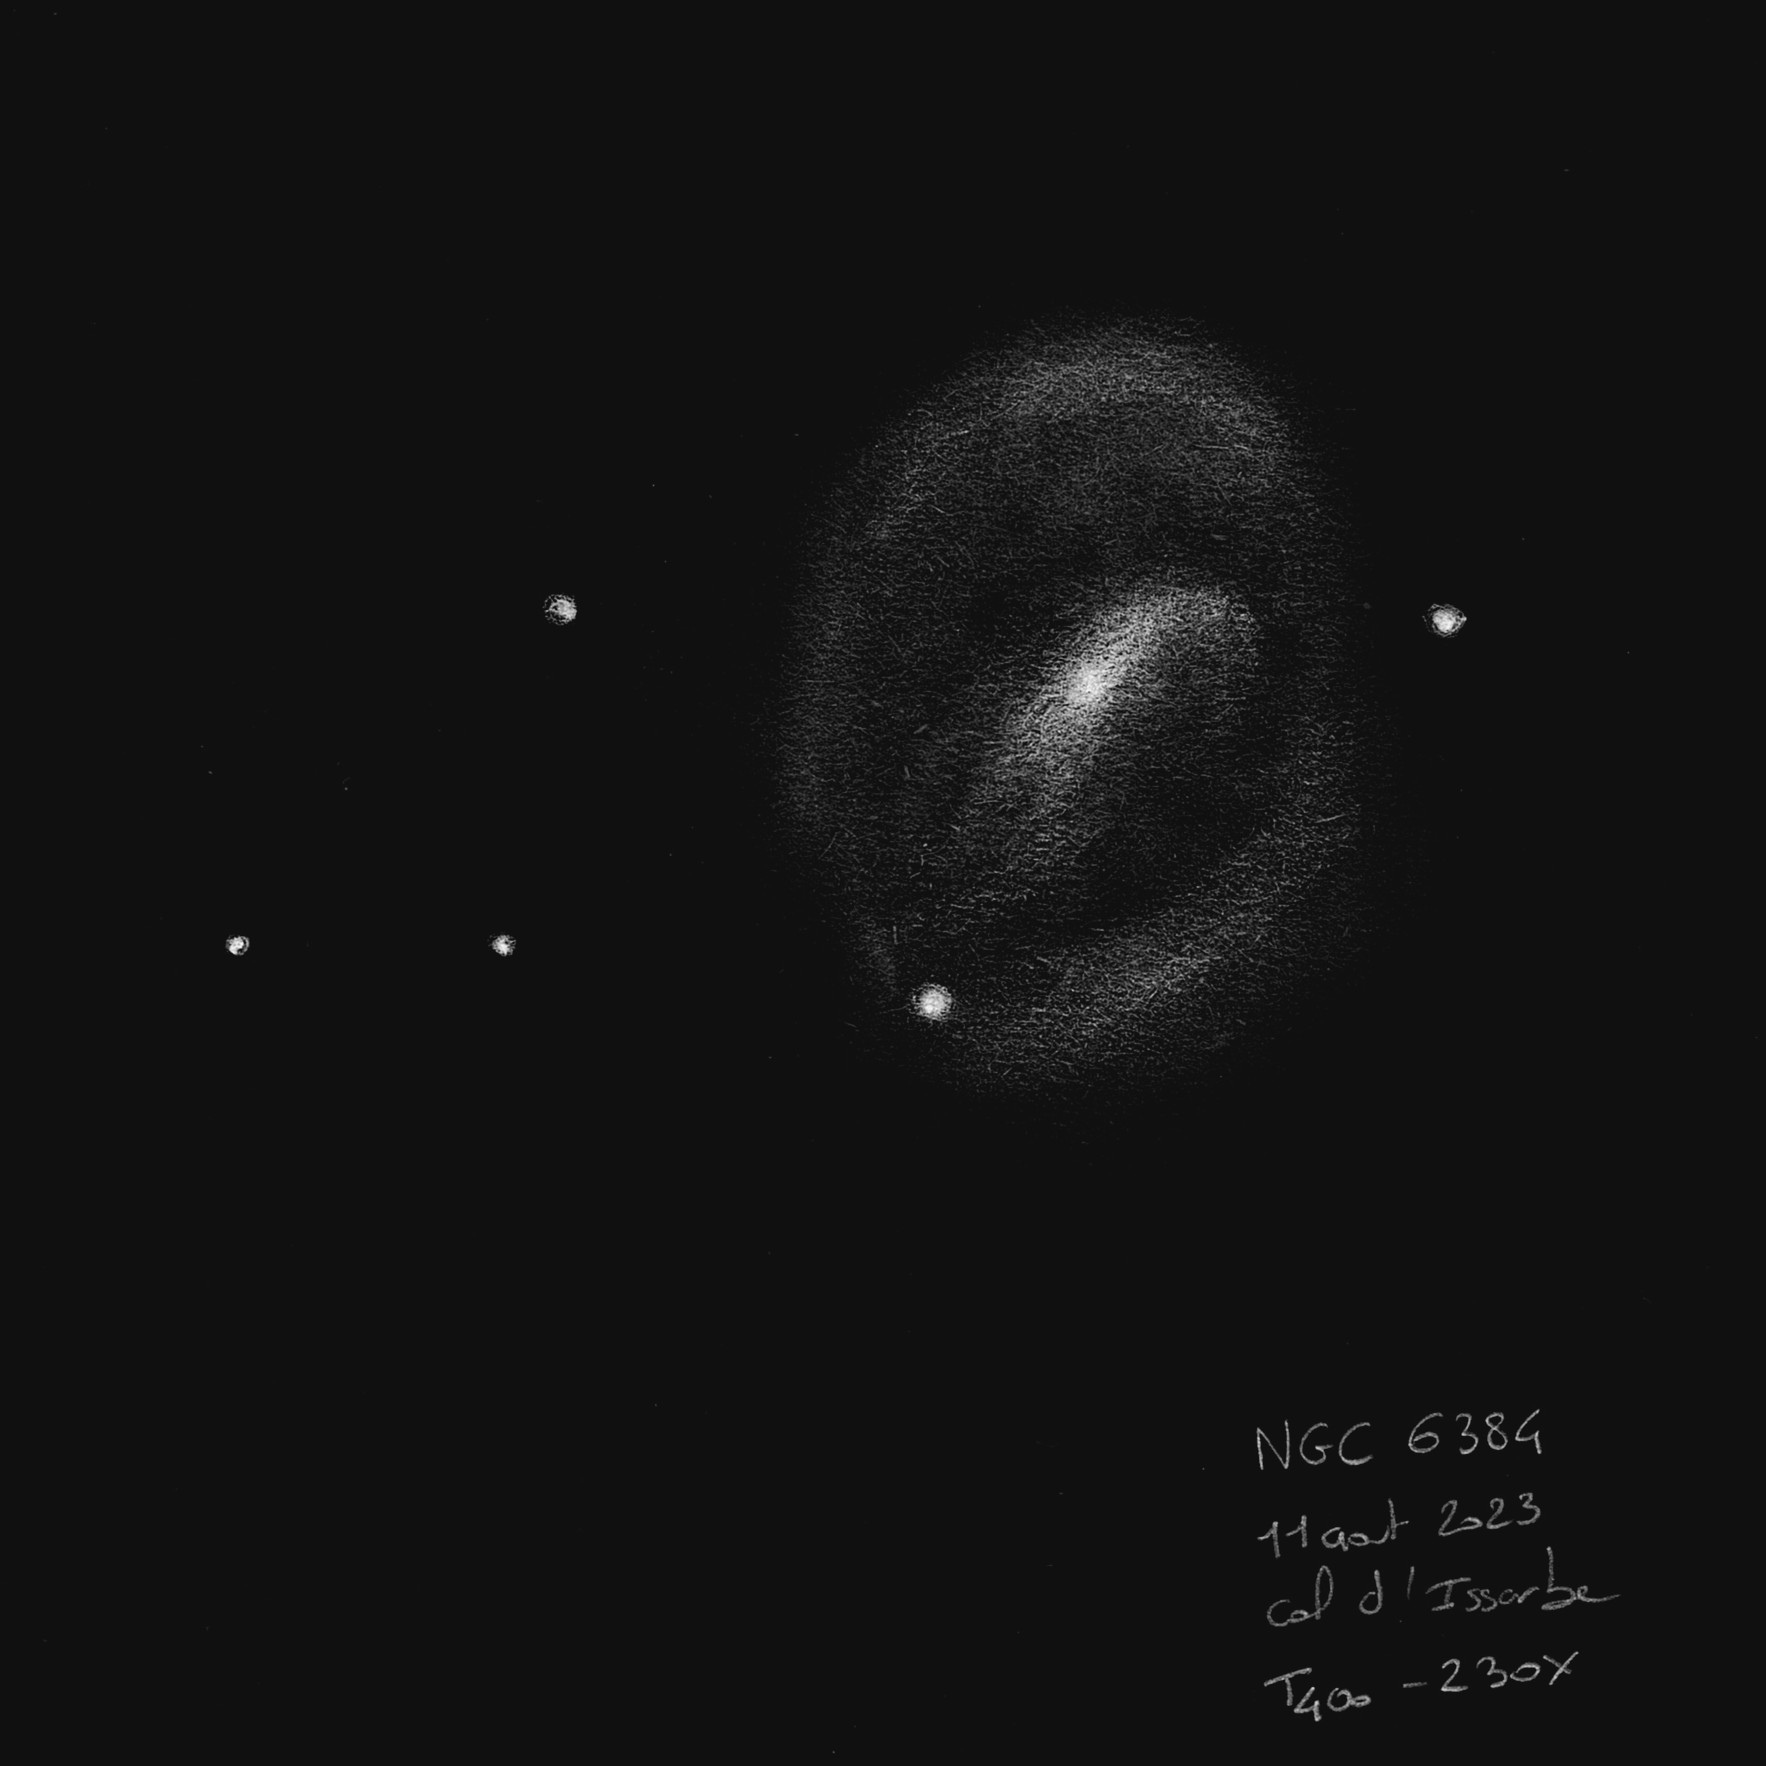 64d966c9ad446_NGC6384.jpeg.099cfa4e62e5e5c8e3782d0072e702fa.jpeg